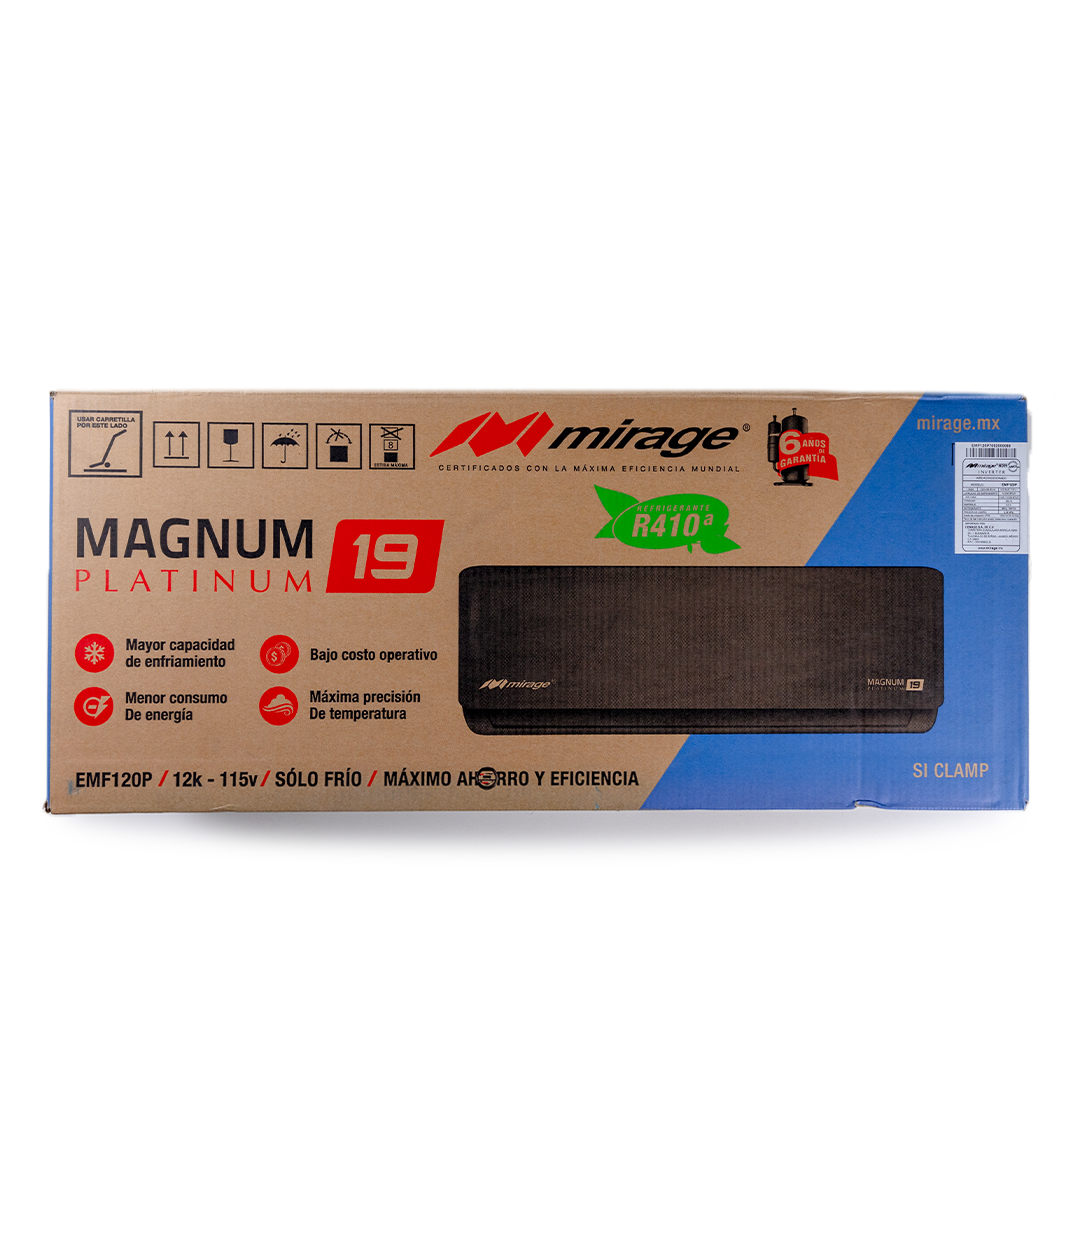 Magnum 19 Platinum Inverter CMF120P 110v 1 Tonelada